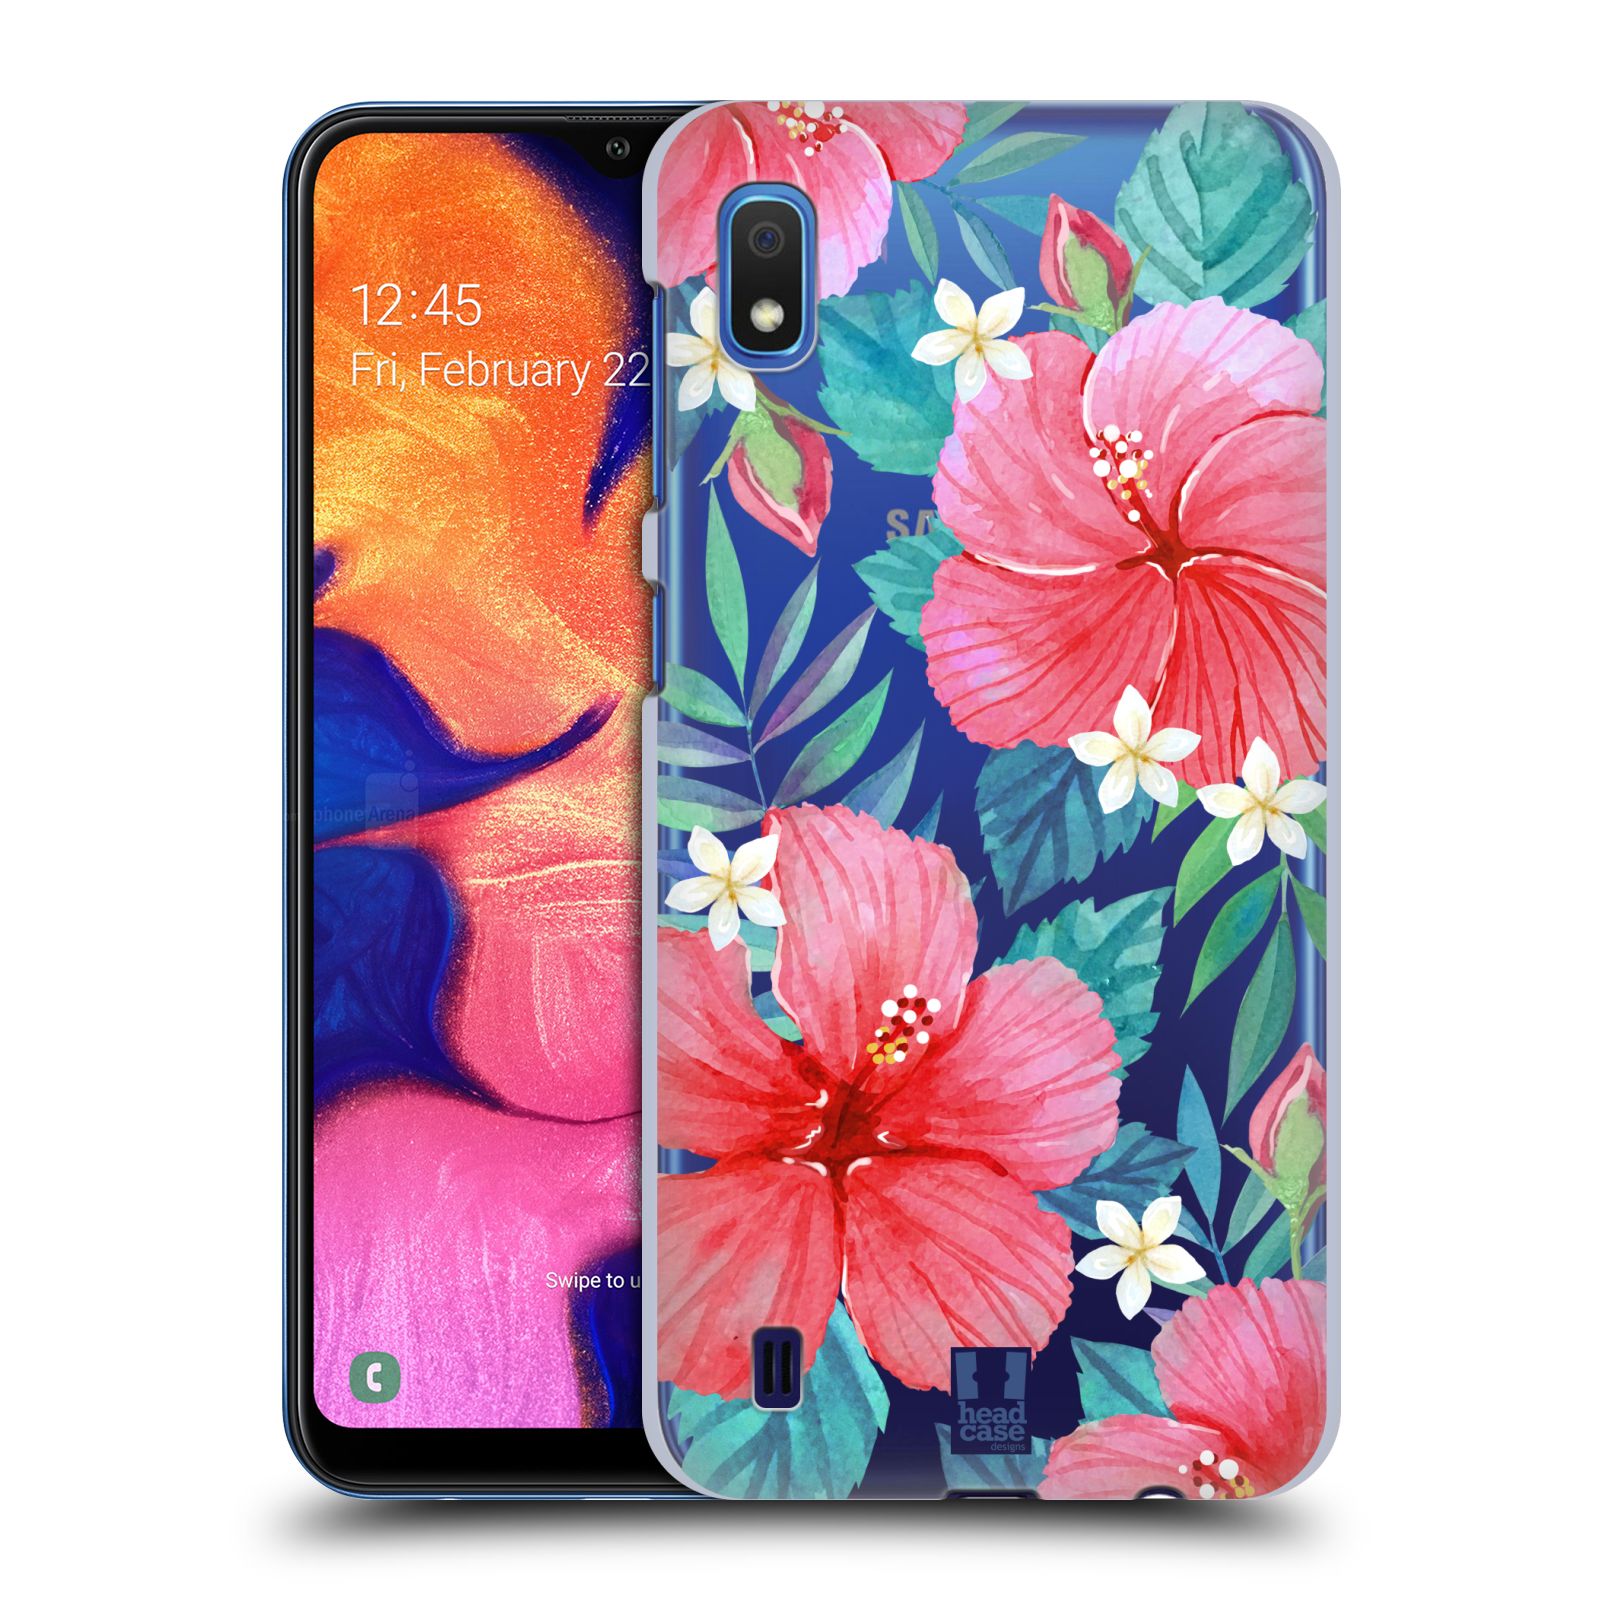 Pouzdro na mobil Samsung Galaxy A10 - HEAD CASE - květinové vzory Ibišek čínská růže